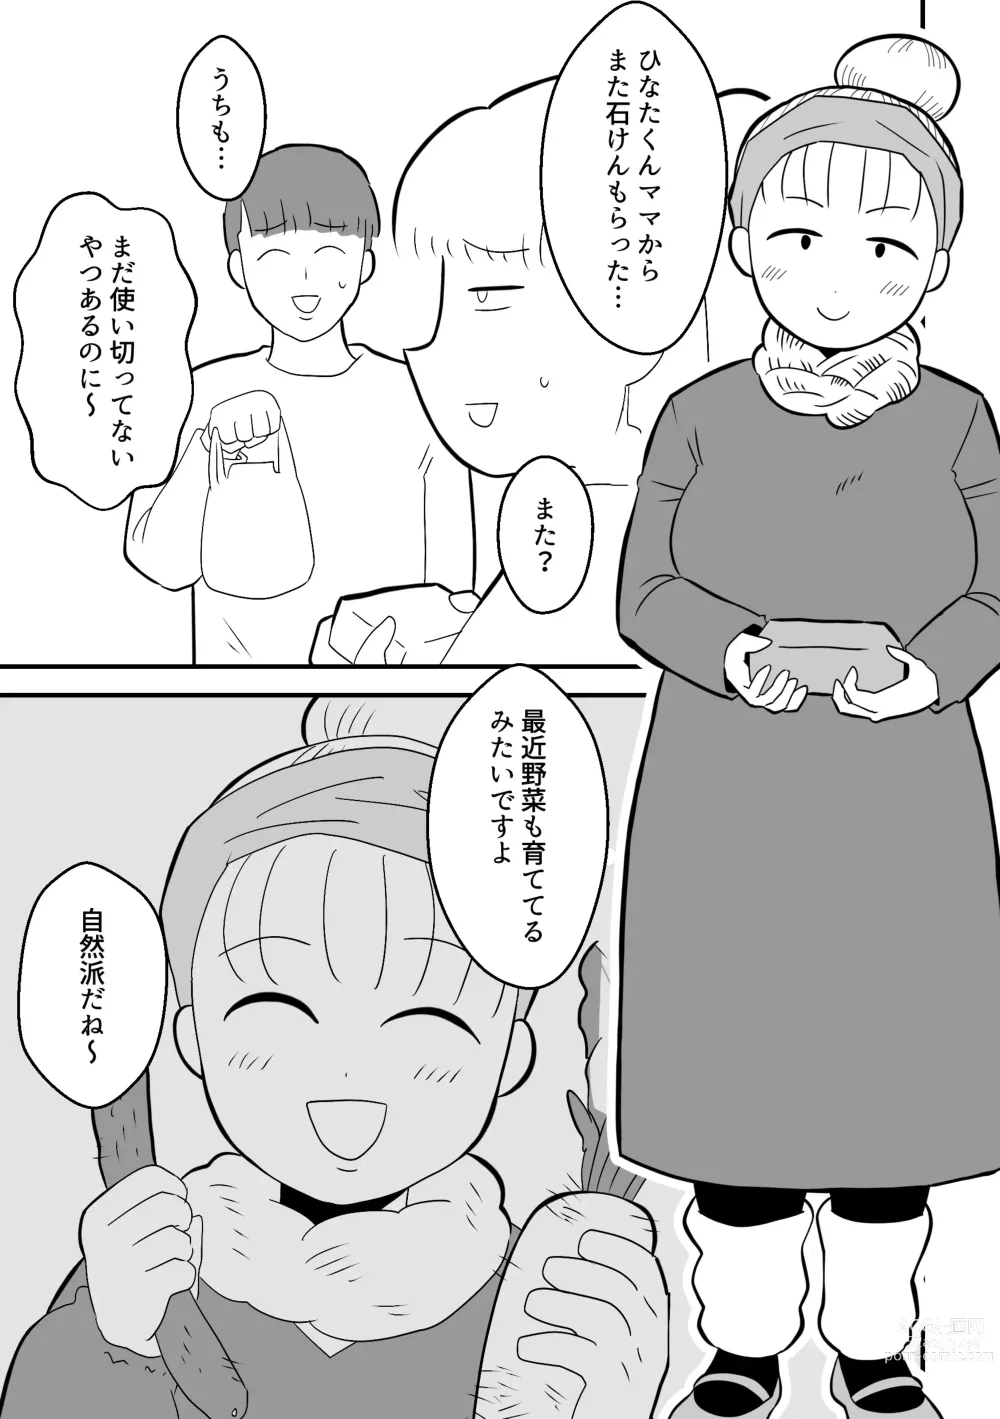 Page 13 of doujinshi Rin-chan Papa Sengyoushufu ga Mamatomo Zenin Kutte mita Sono 2